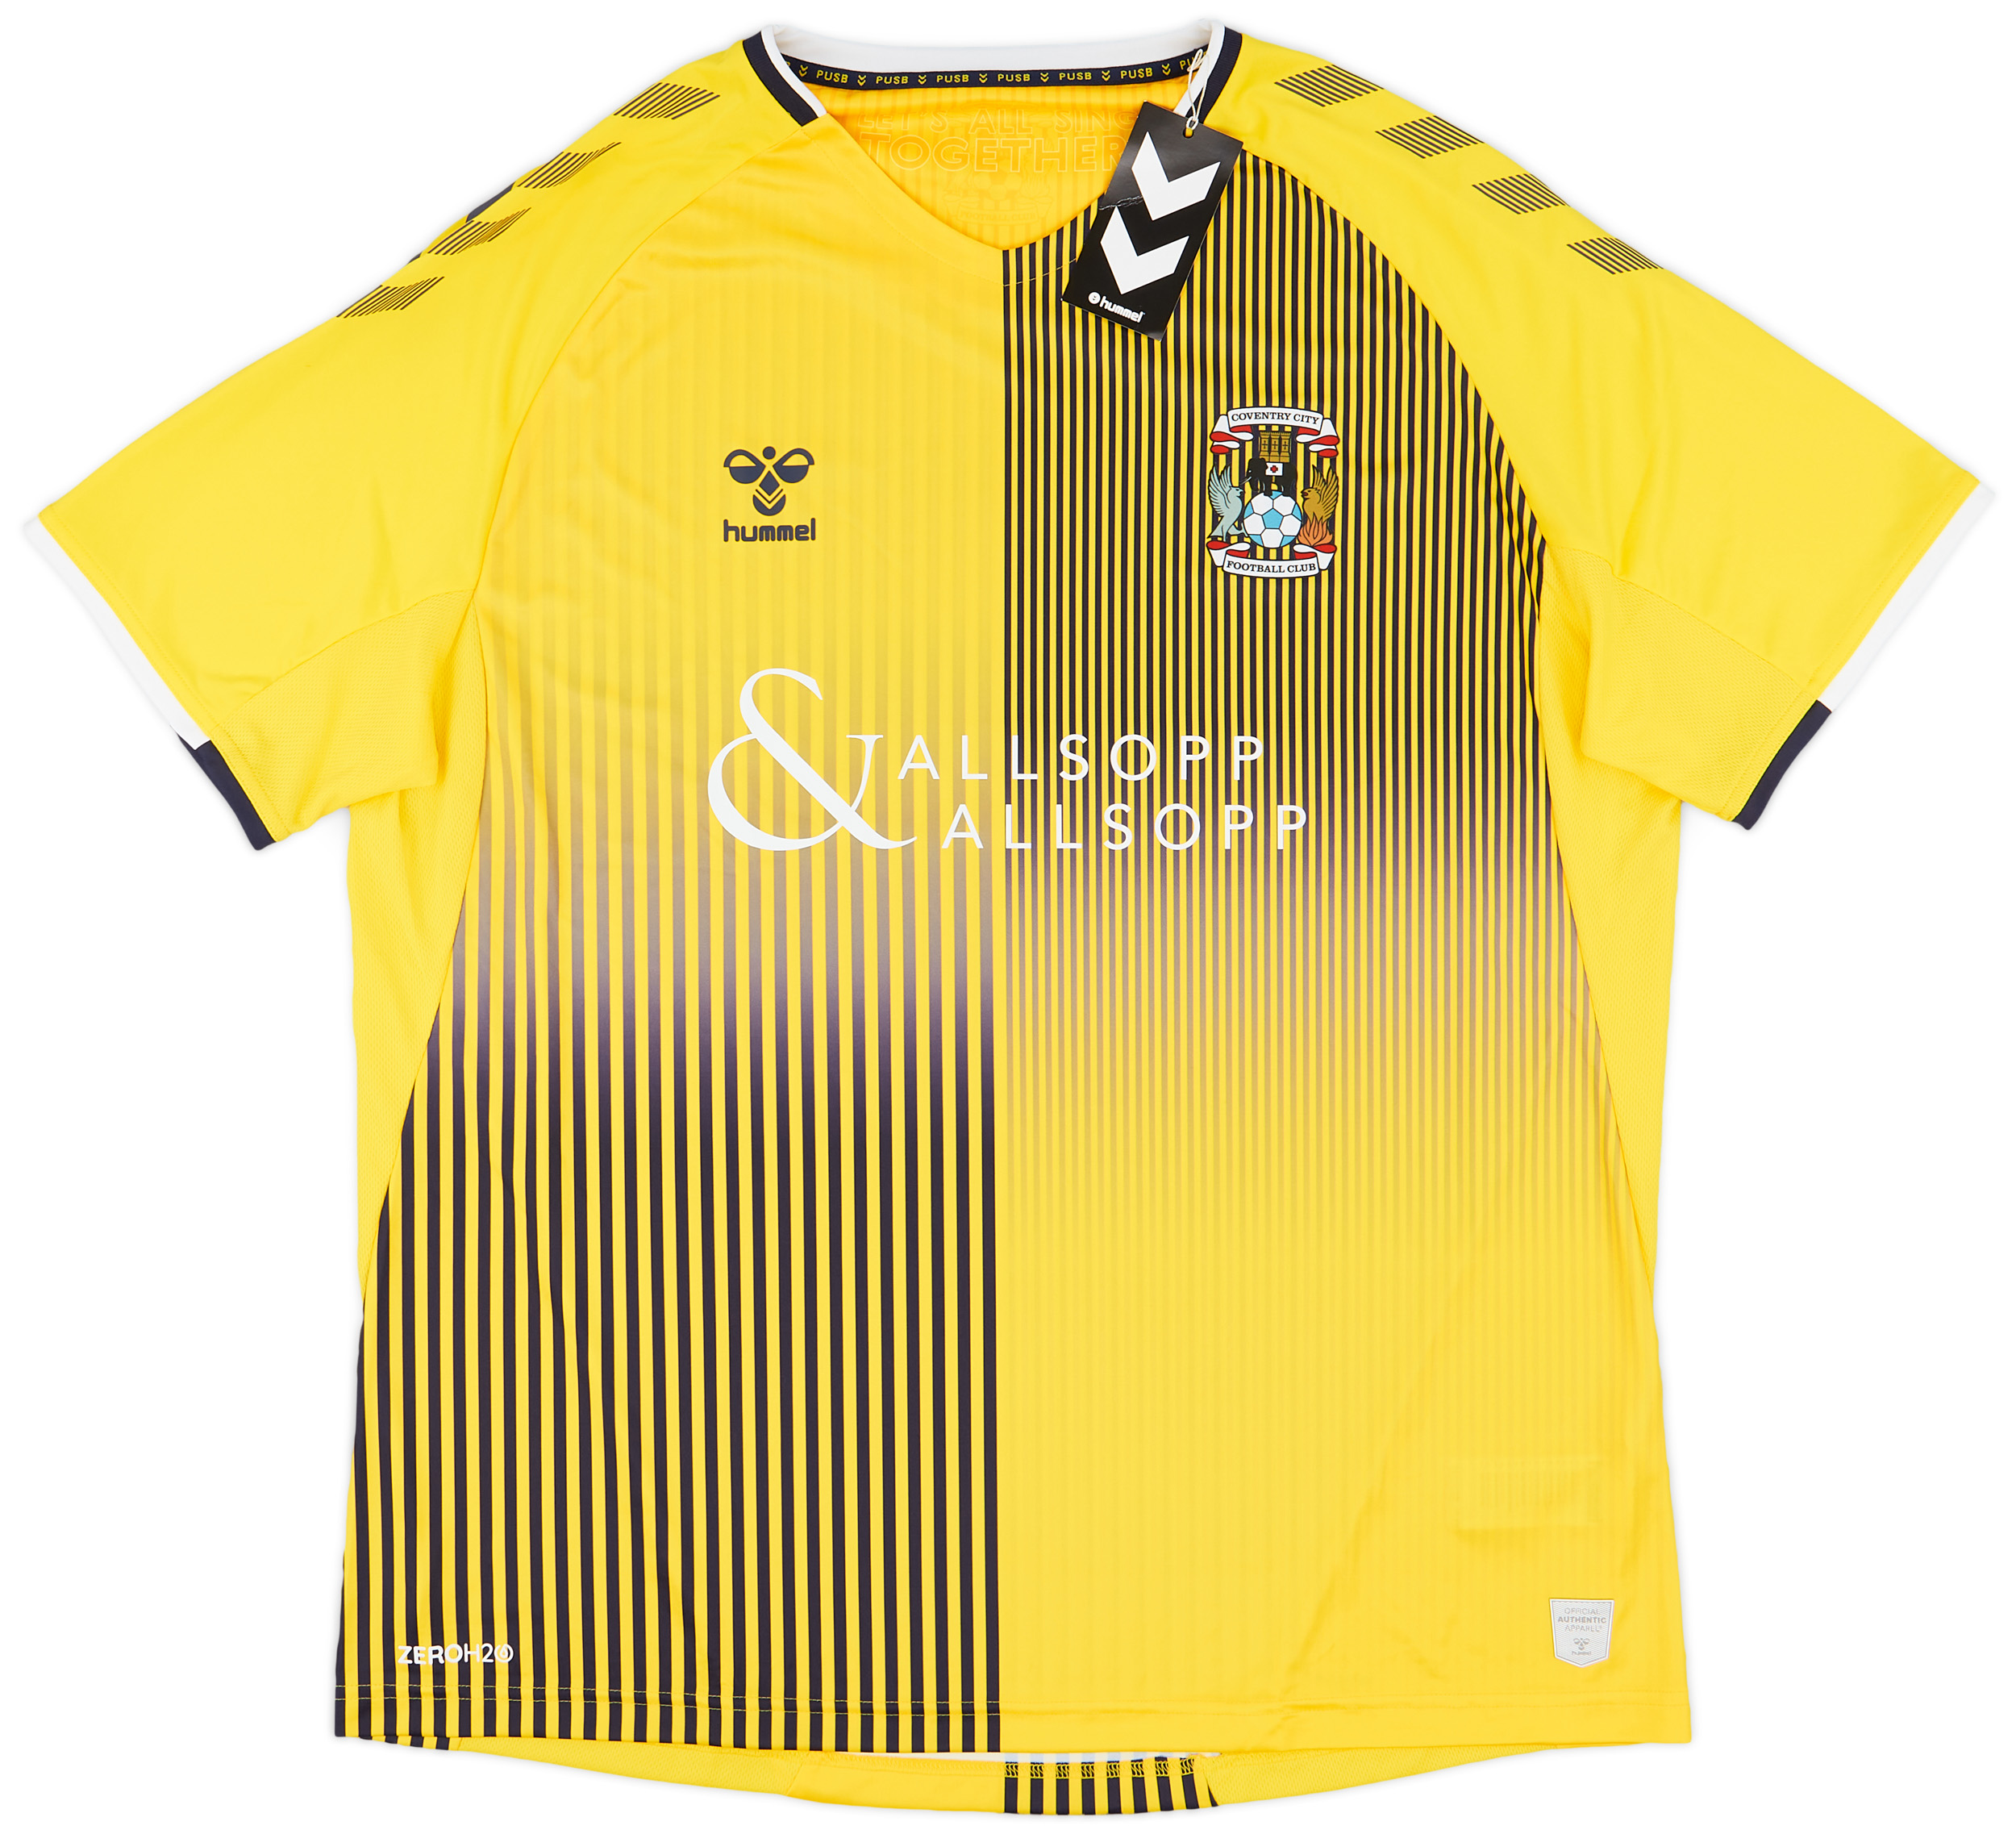 Coventry City  Fora camisa (Original)